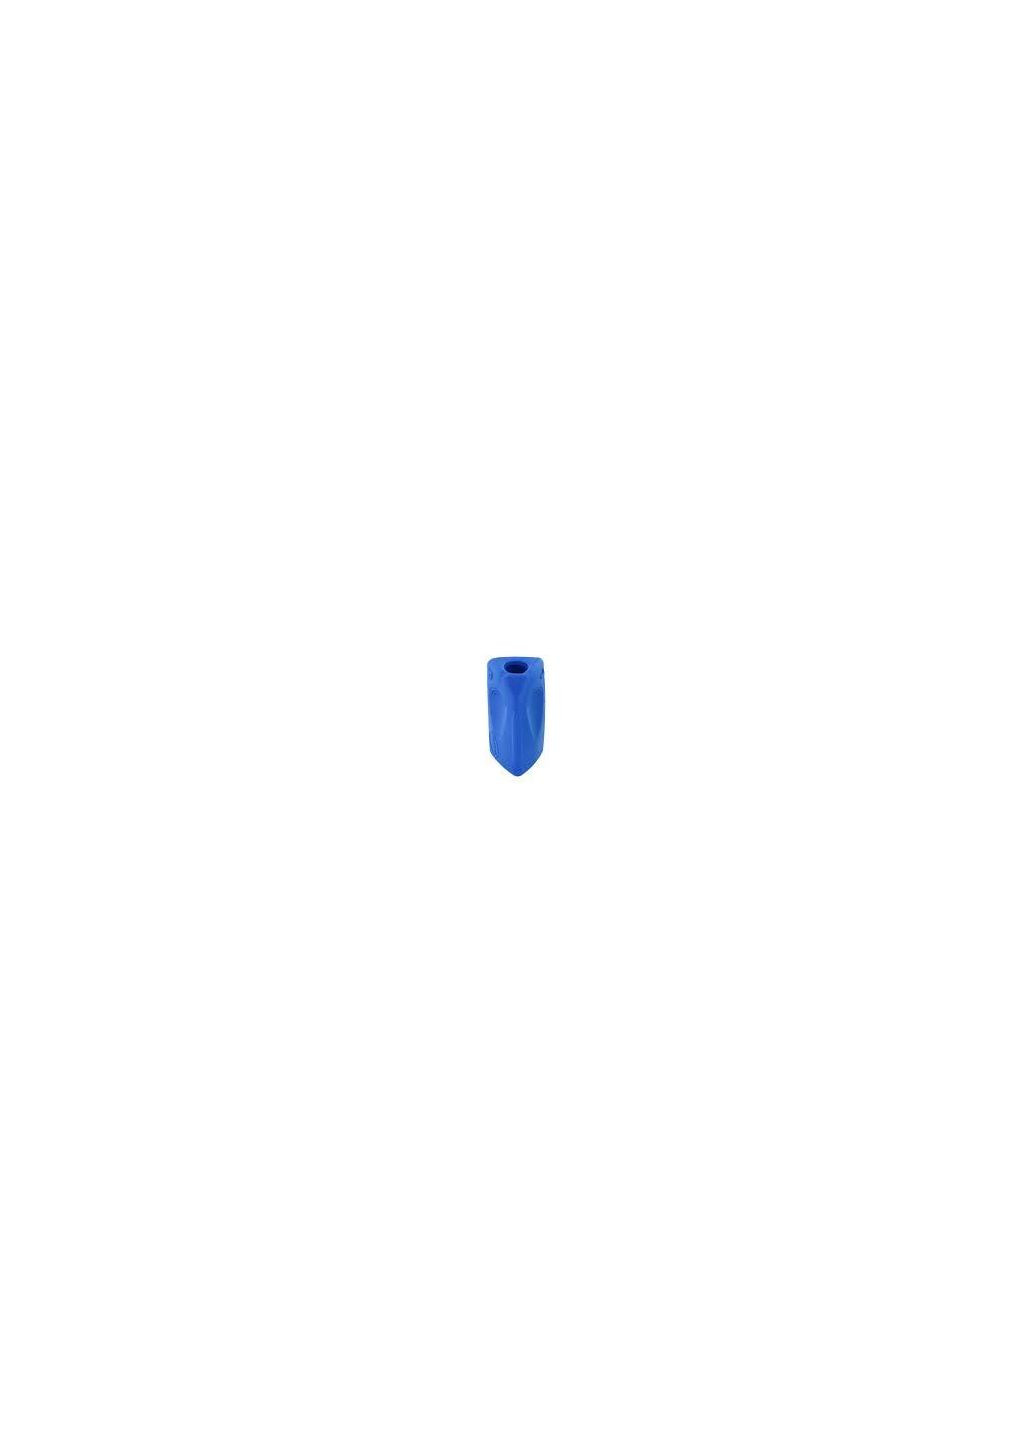 Утримувач ергономічний Sattler Tril Grip синій, для ручок, олівців KUM (280927865)